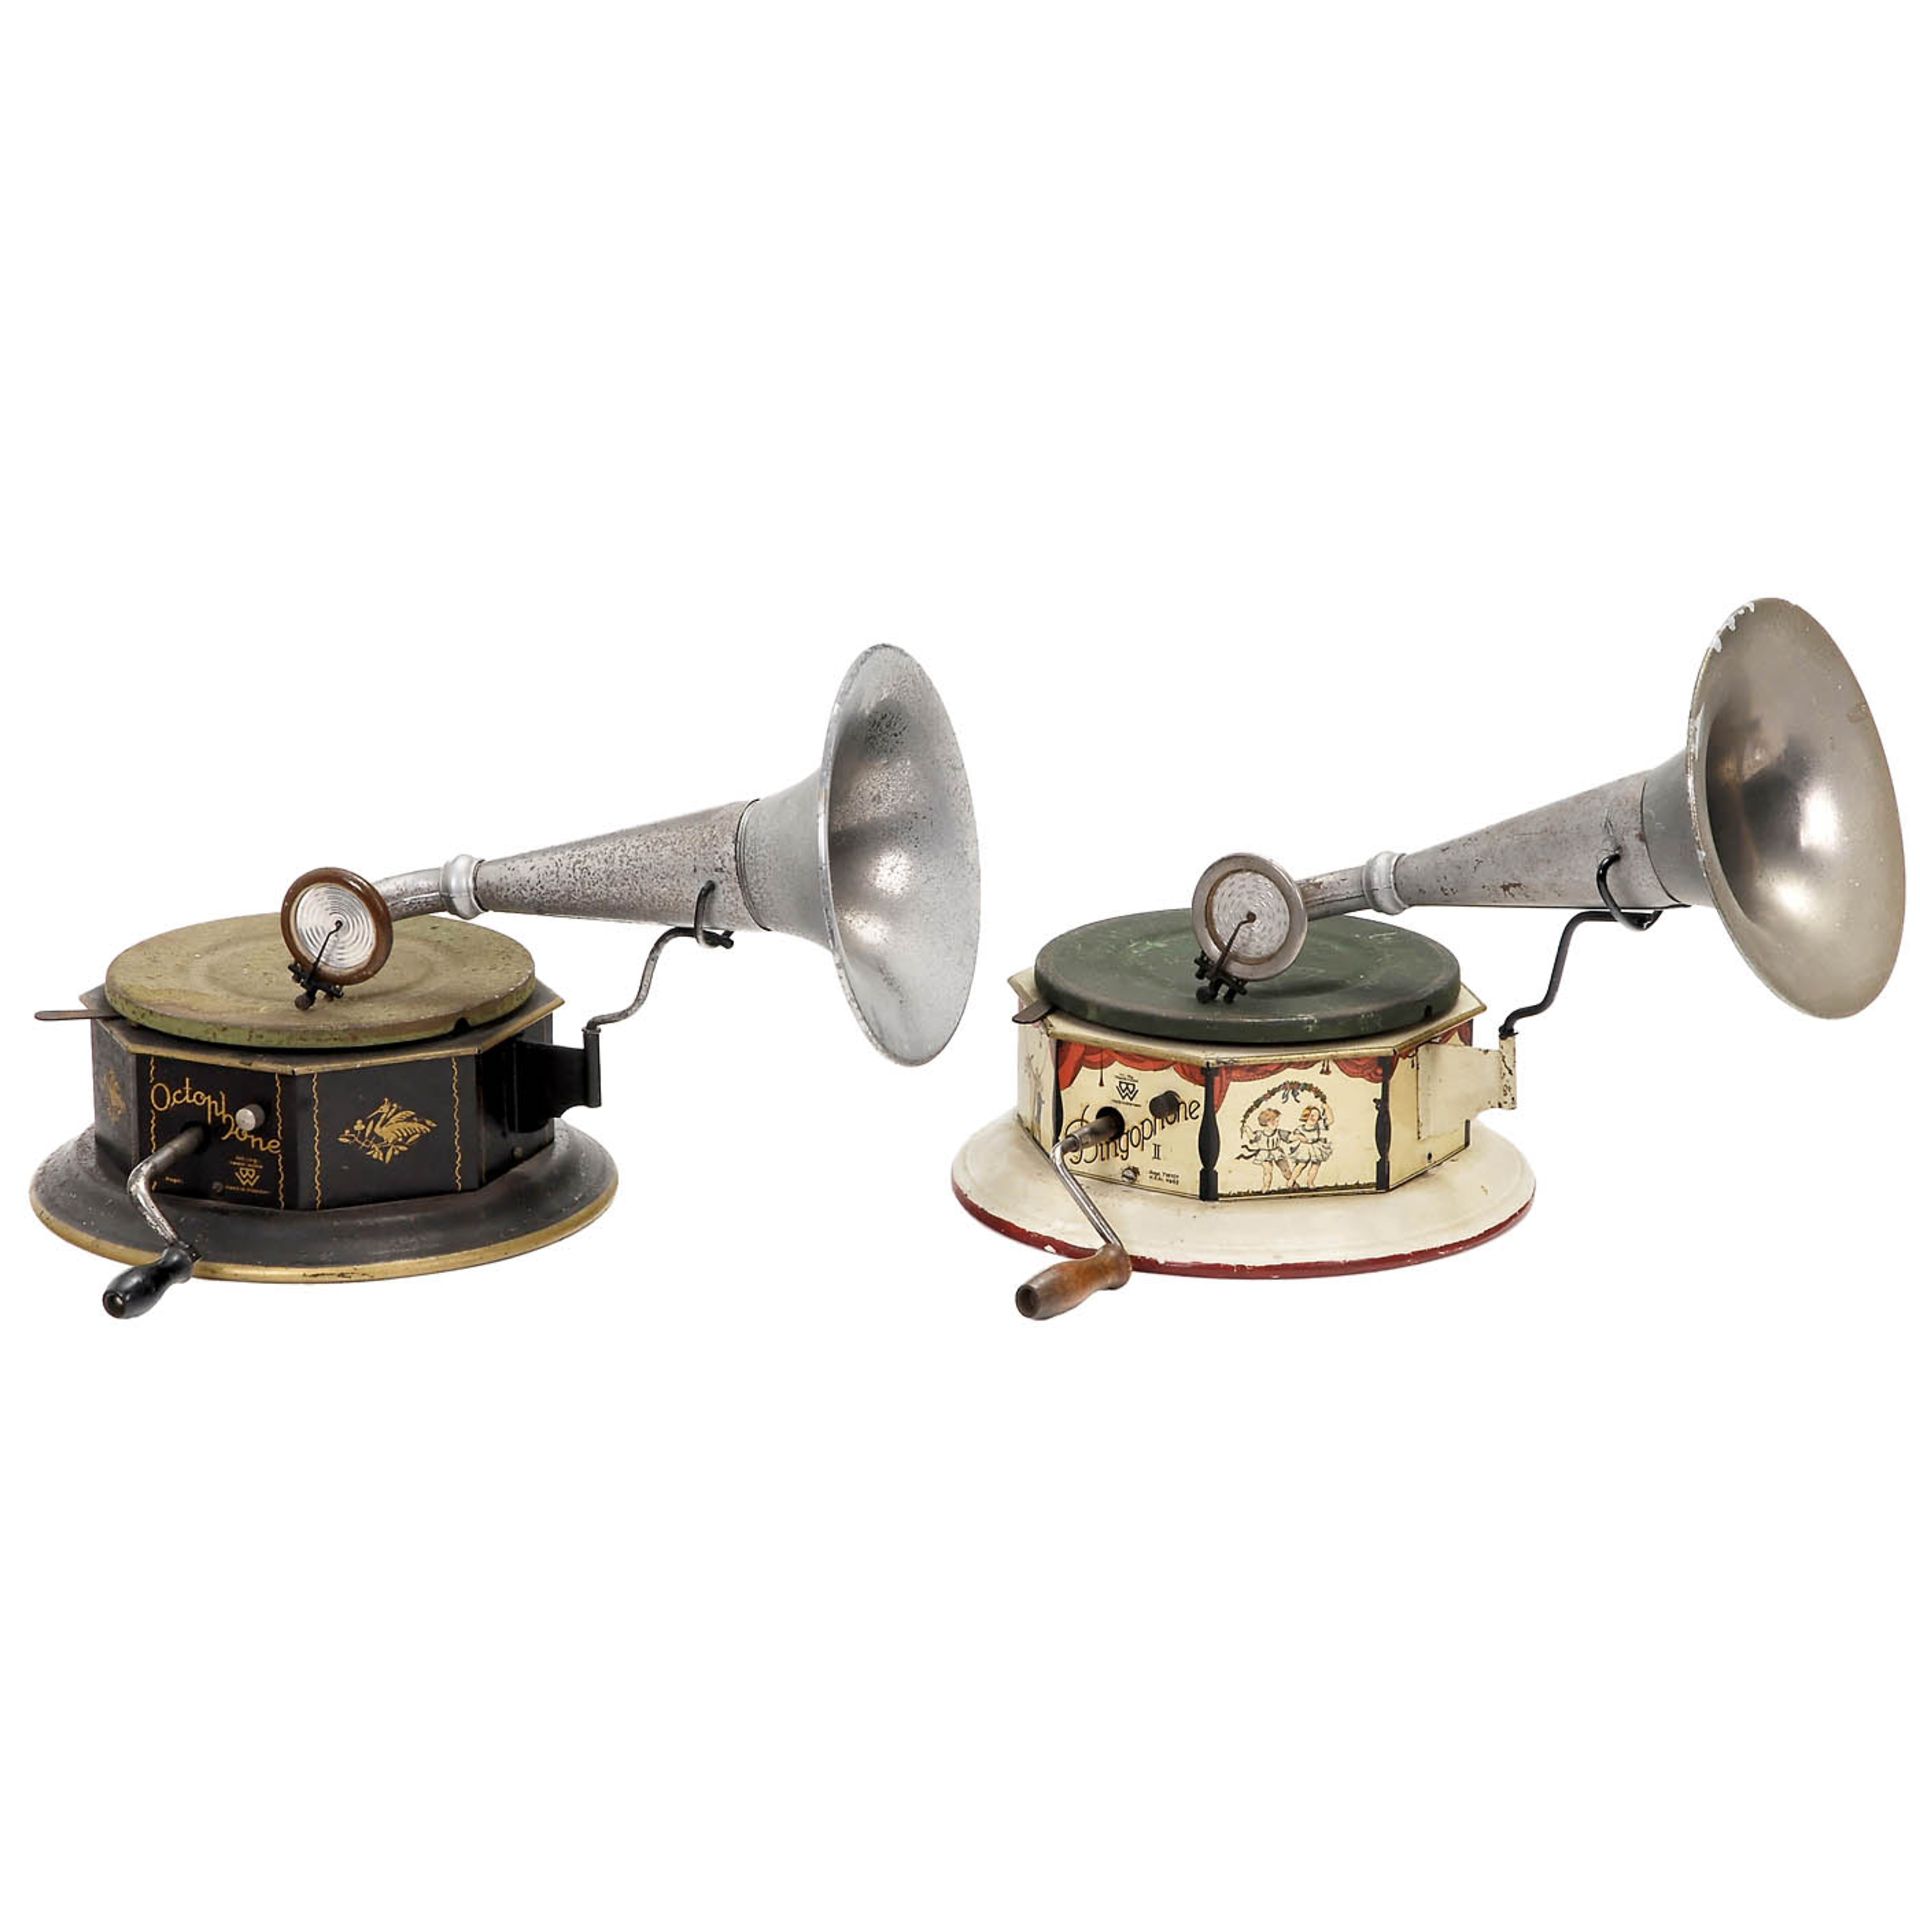 2 Spielzeug-Grammophone von Bing, um 1925